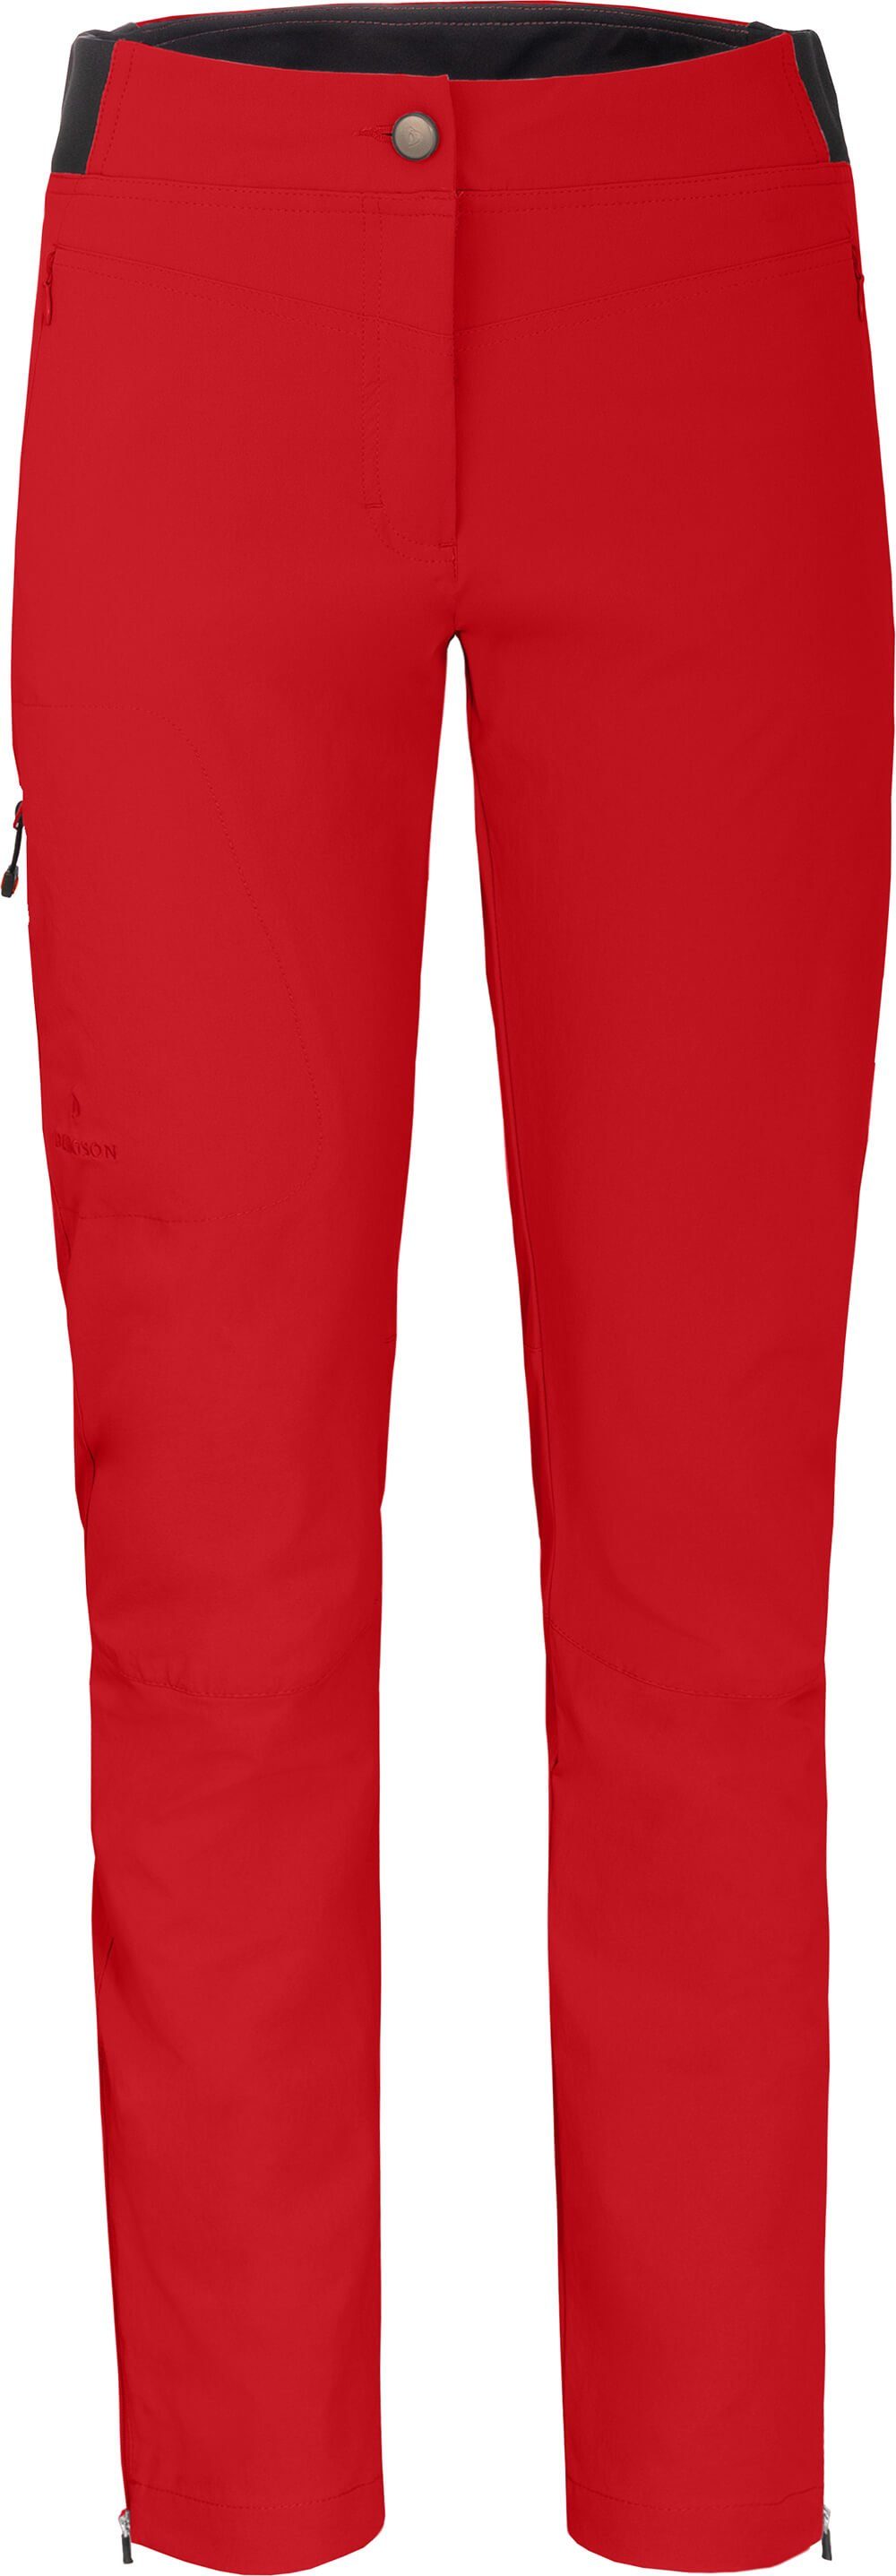 Red Chili Hosen für Damen online kaufen | OTTO